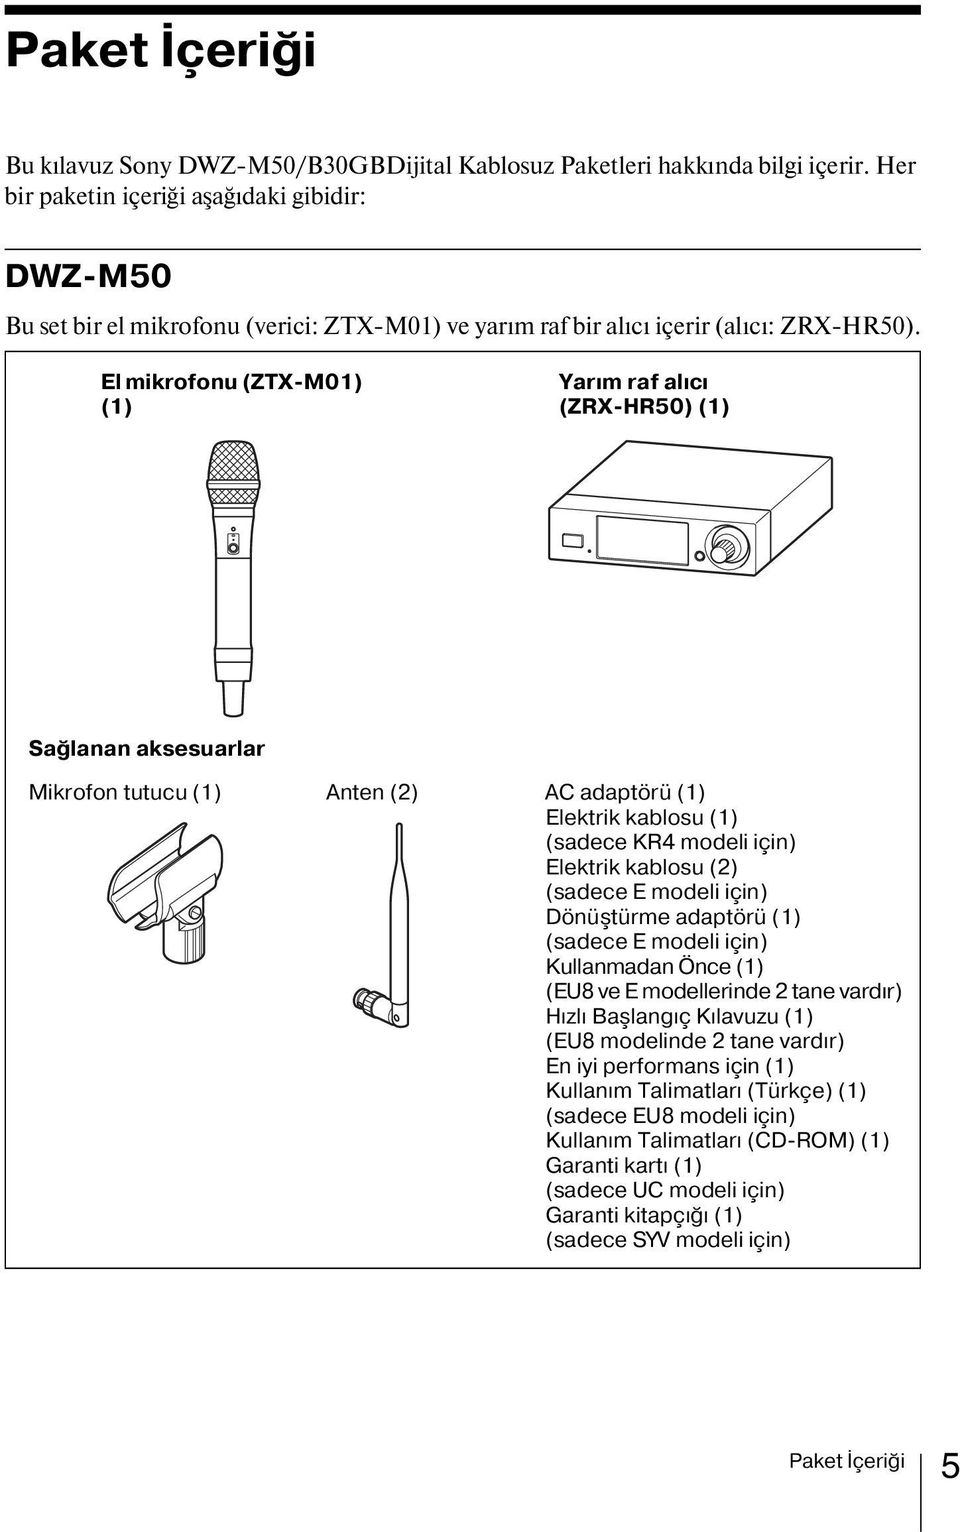 El mikrofonu (ZTX-M01) (1) Yarım raf alıcı (ZRX-HR50) (1) Sağlanan aksesuarlar Mikrofon tutucu (1) Anten (2) AC adaptörü (1) Elektrik kablosu (1) (sadece KR4 modeli için) Elektrik kablosu (2) (sadece